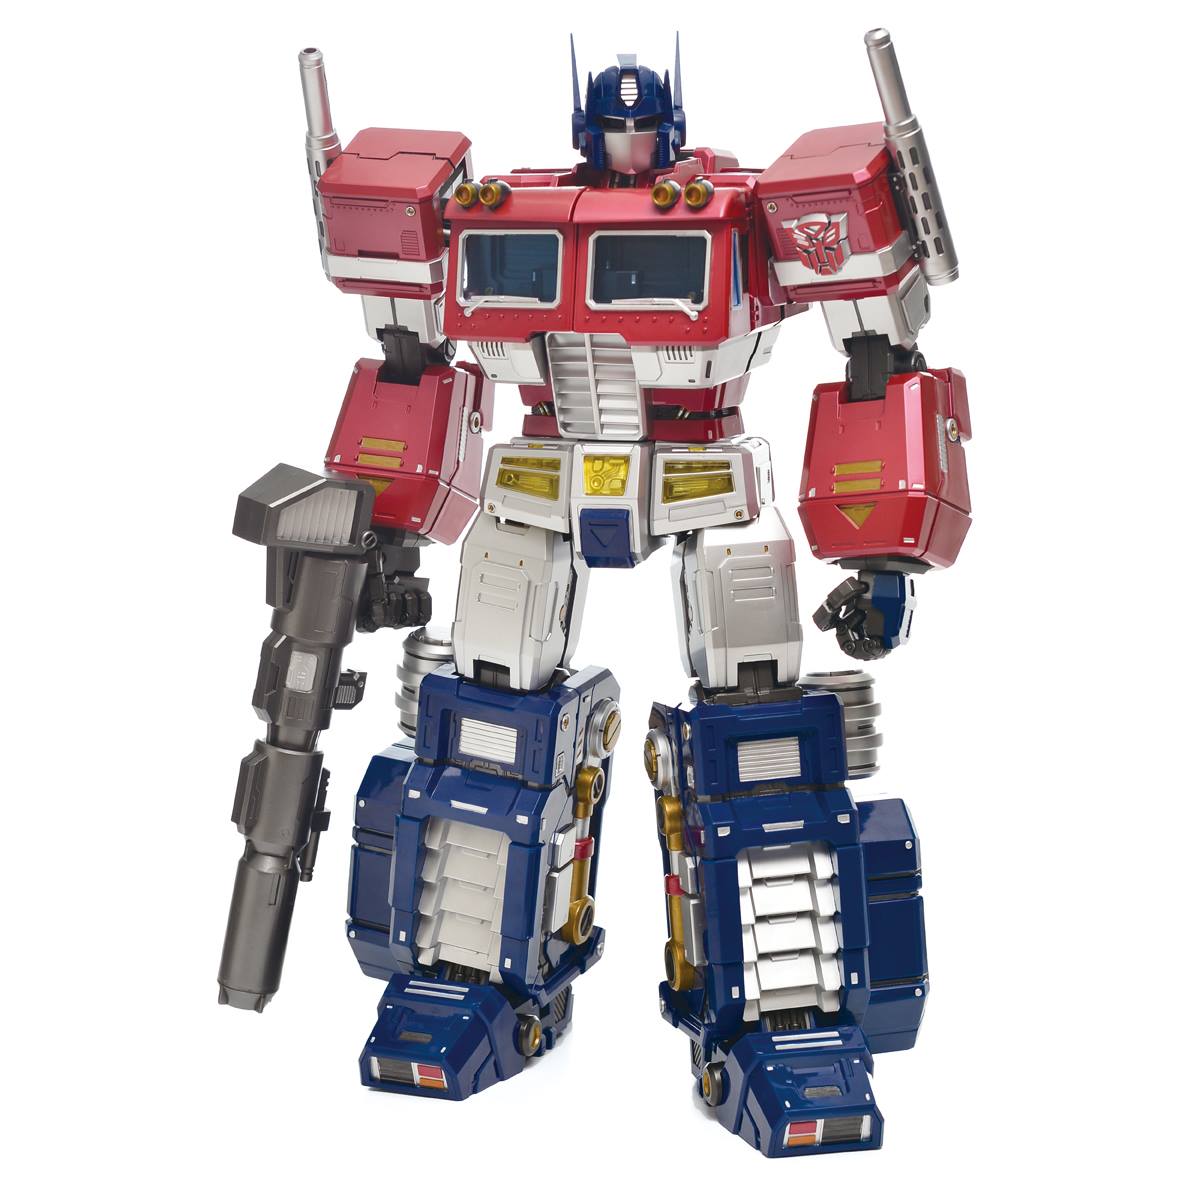 Оптимус купить игрушку. Оптимус Прайм игрушка трансформер. Transformers Optimus Prime Toy. Optimus Prime Toy 1990. Оптимус мега Прайм игрушки трансформеры.